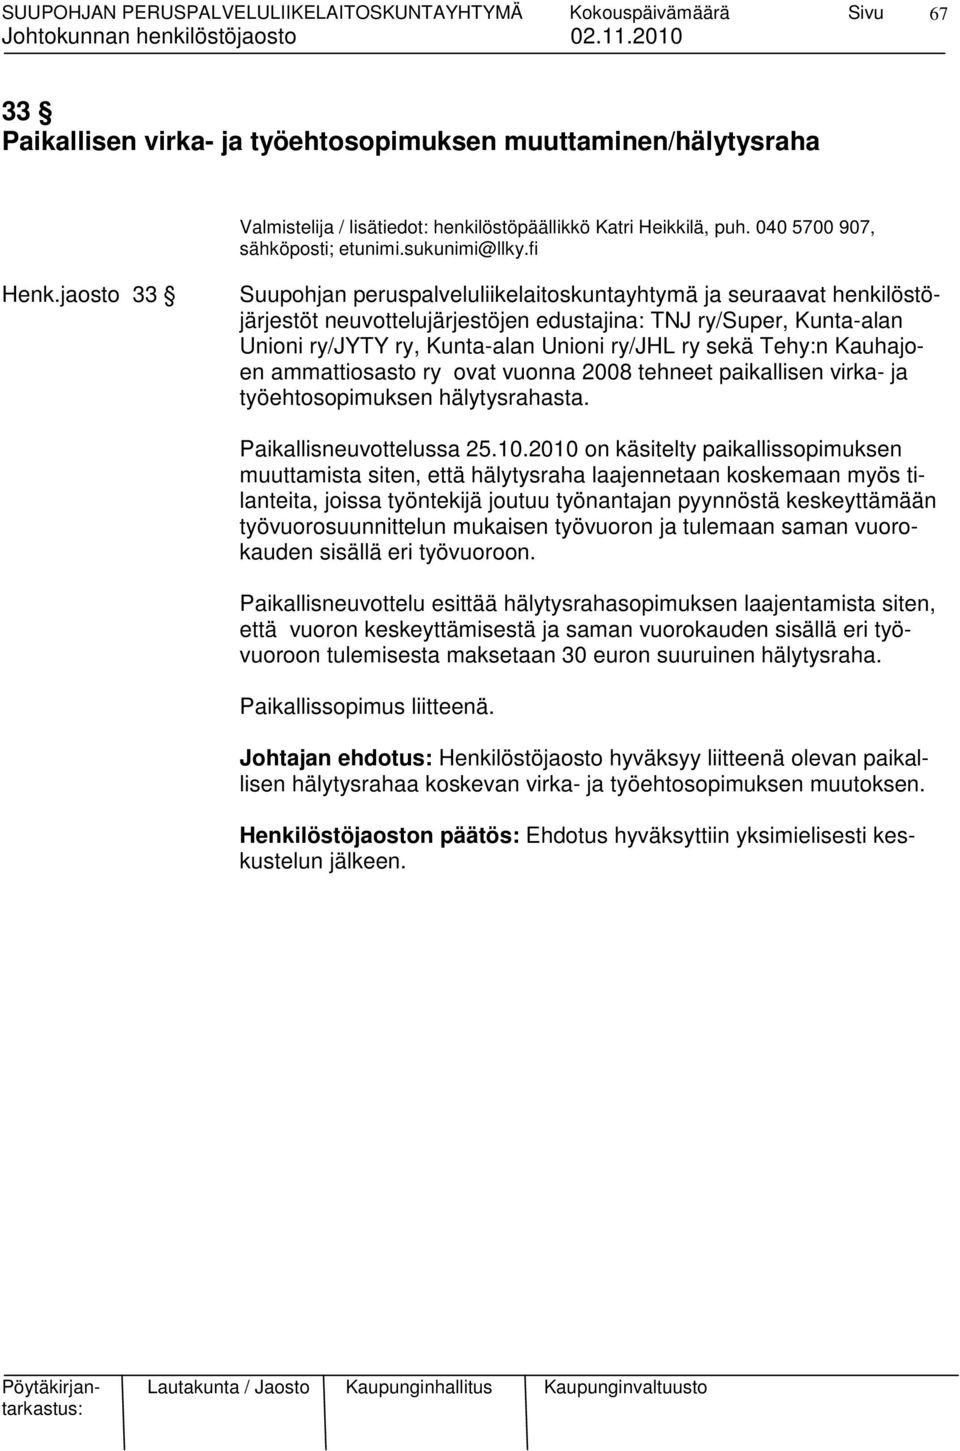 Tehy:n Kauhajoen ammattiosasto ry ovat vuonna 2008 tehneet paikallisen virka- ja työehtosopimuksen hälytysrahasta. Paikallisneuvottelussa 25.10.